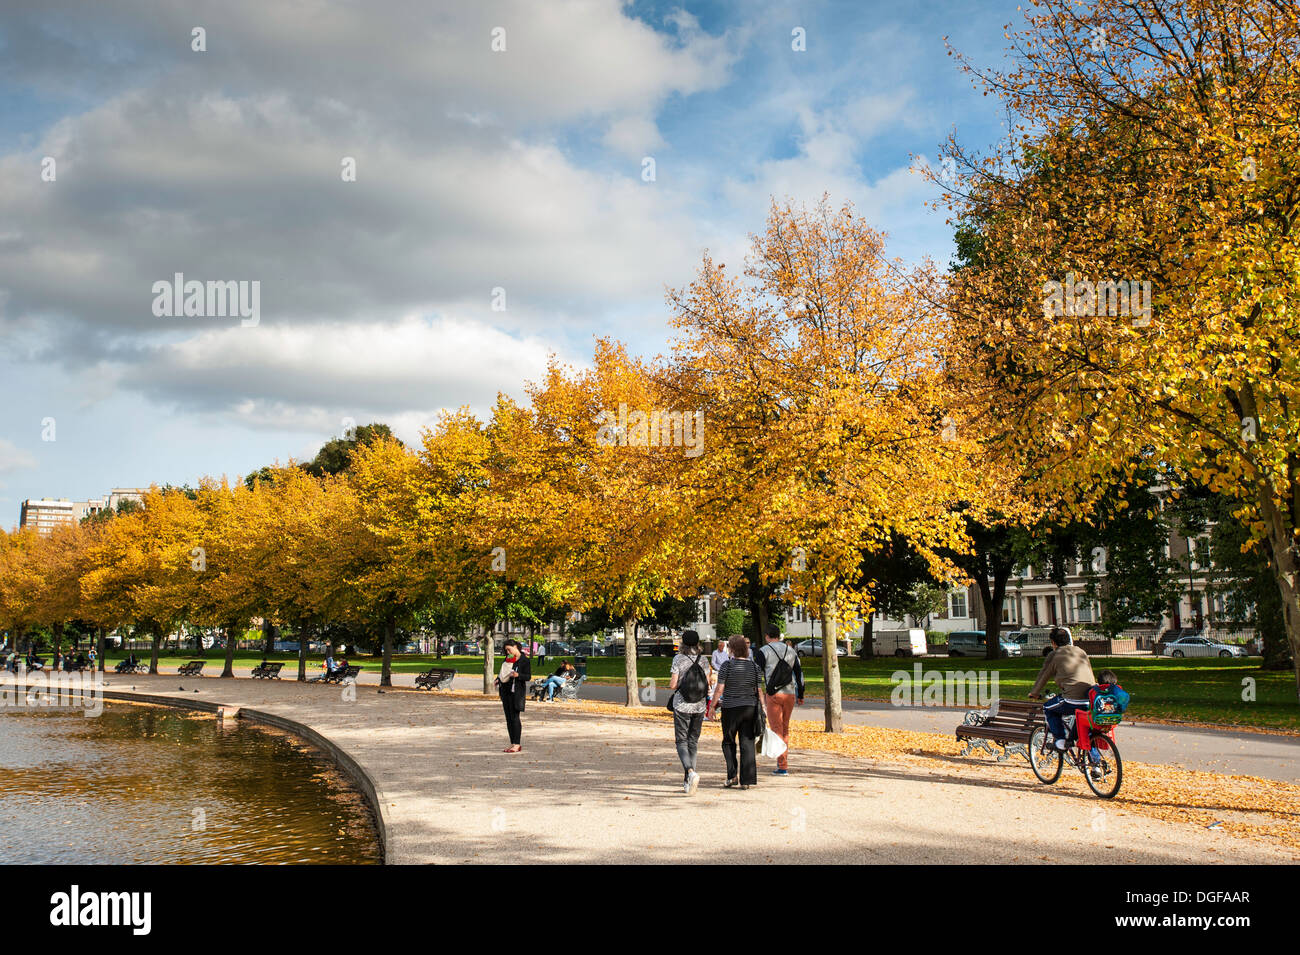 Victoria Park in autumn colours, Hackney, E9, London, United Kingdom Stock Photo